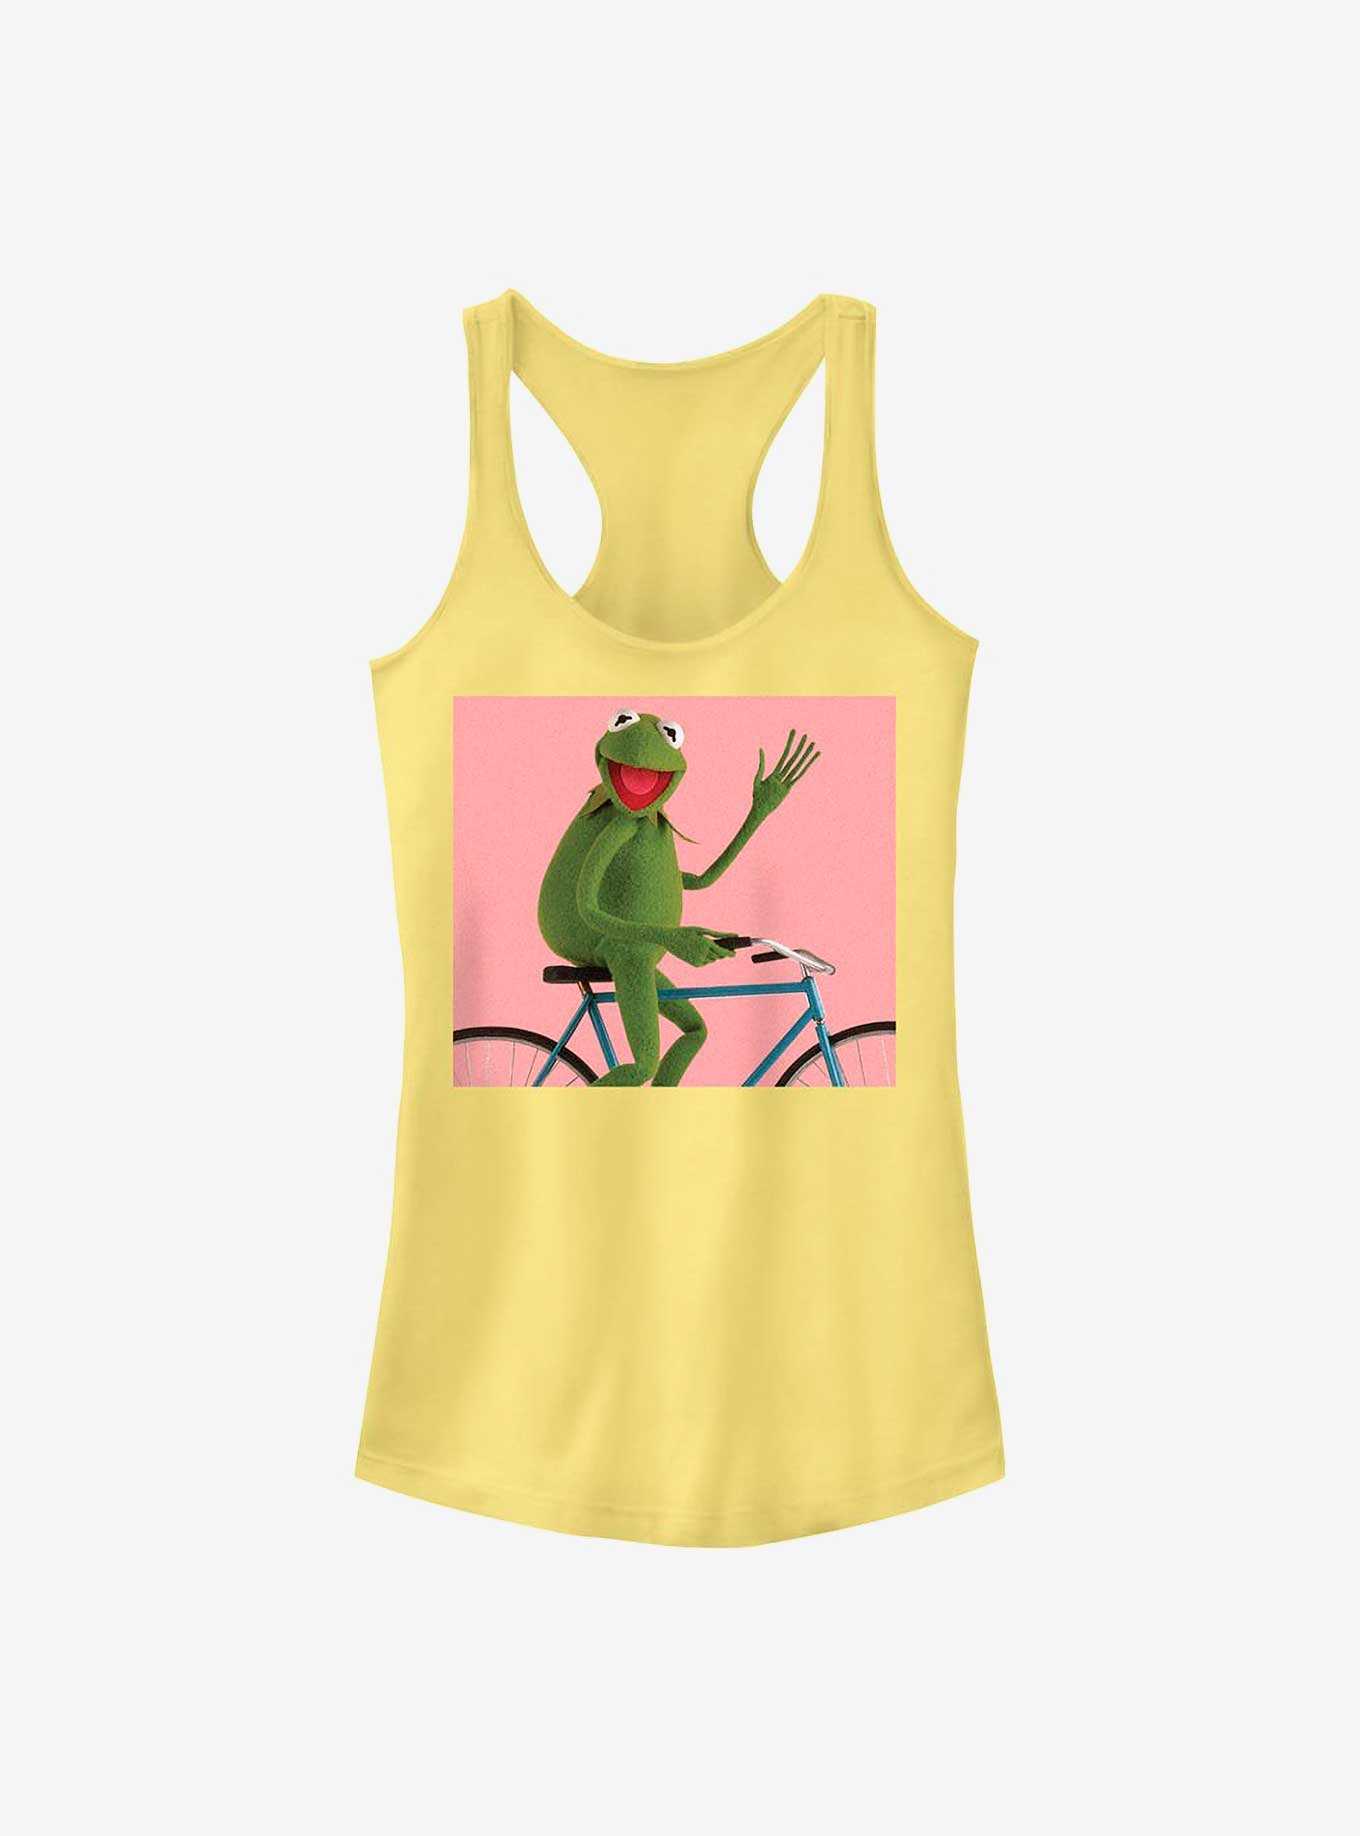 Disney The Muppets Biking Kermit Girls Tank, , hi-res